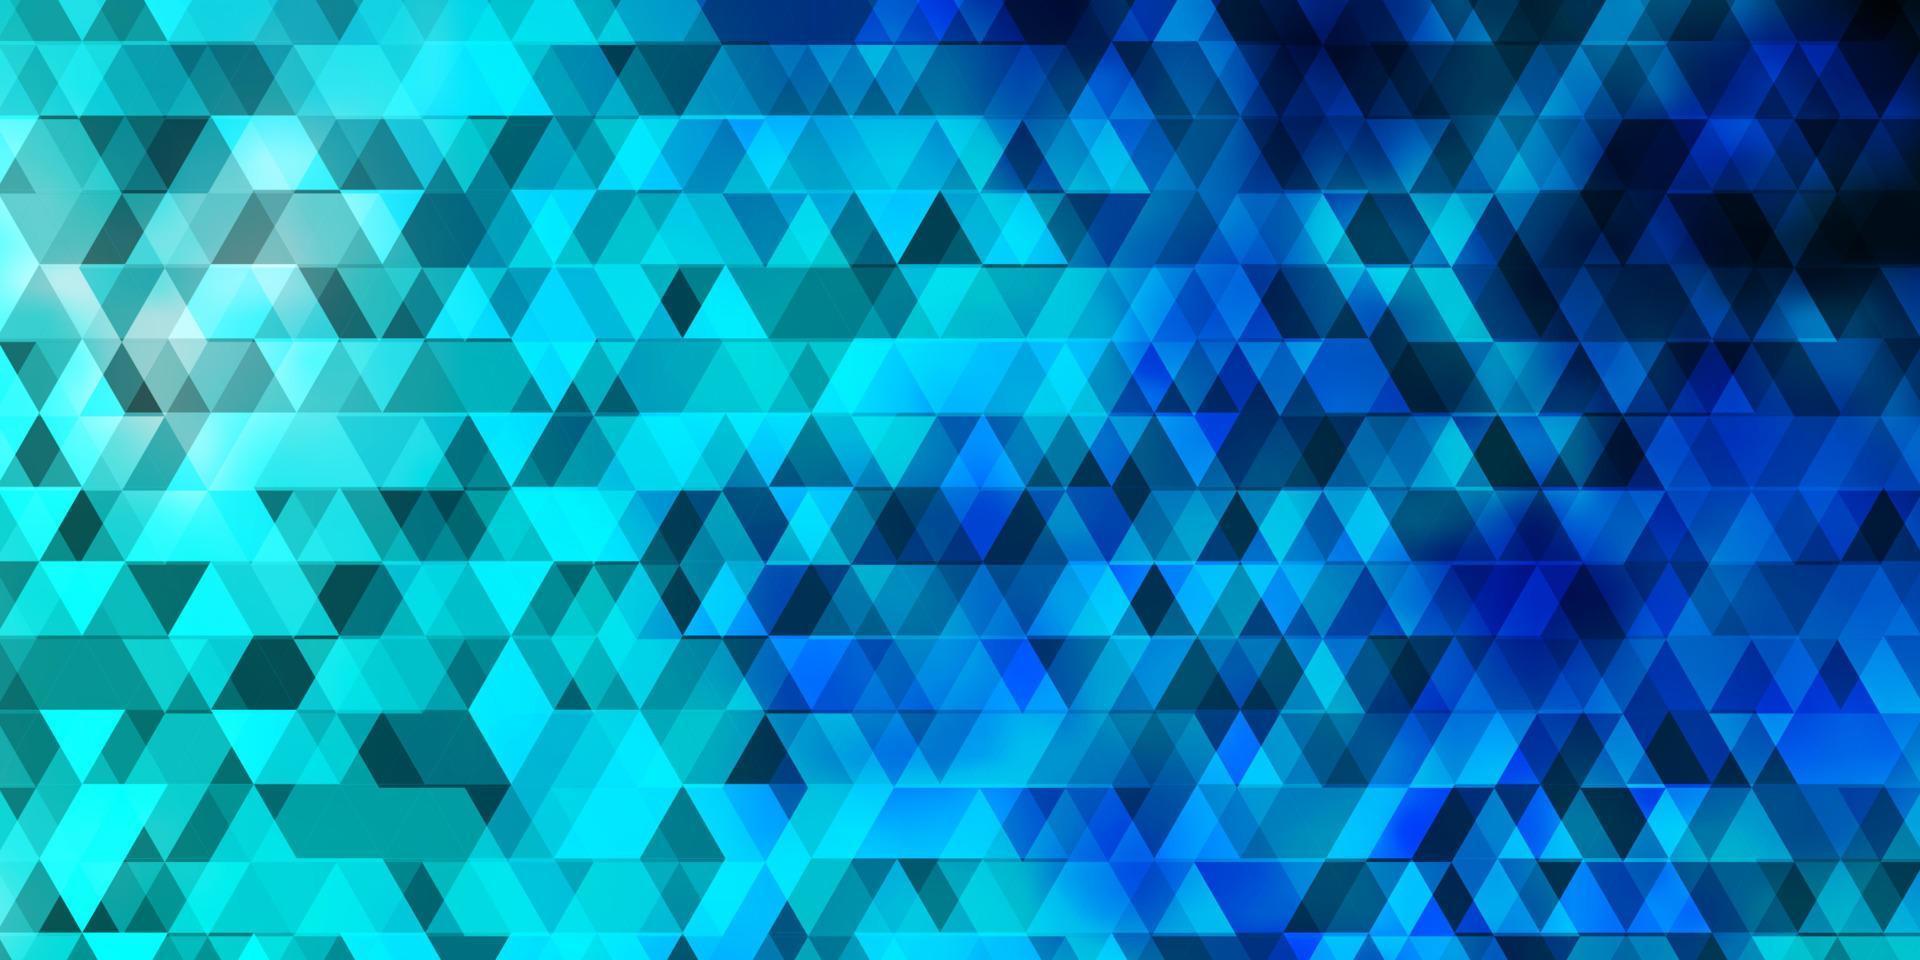 sfondo vettoriale azzurro con linee, triangoli.